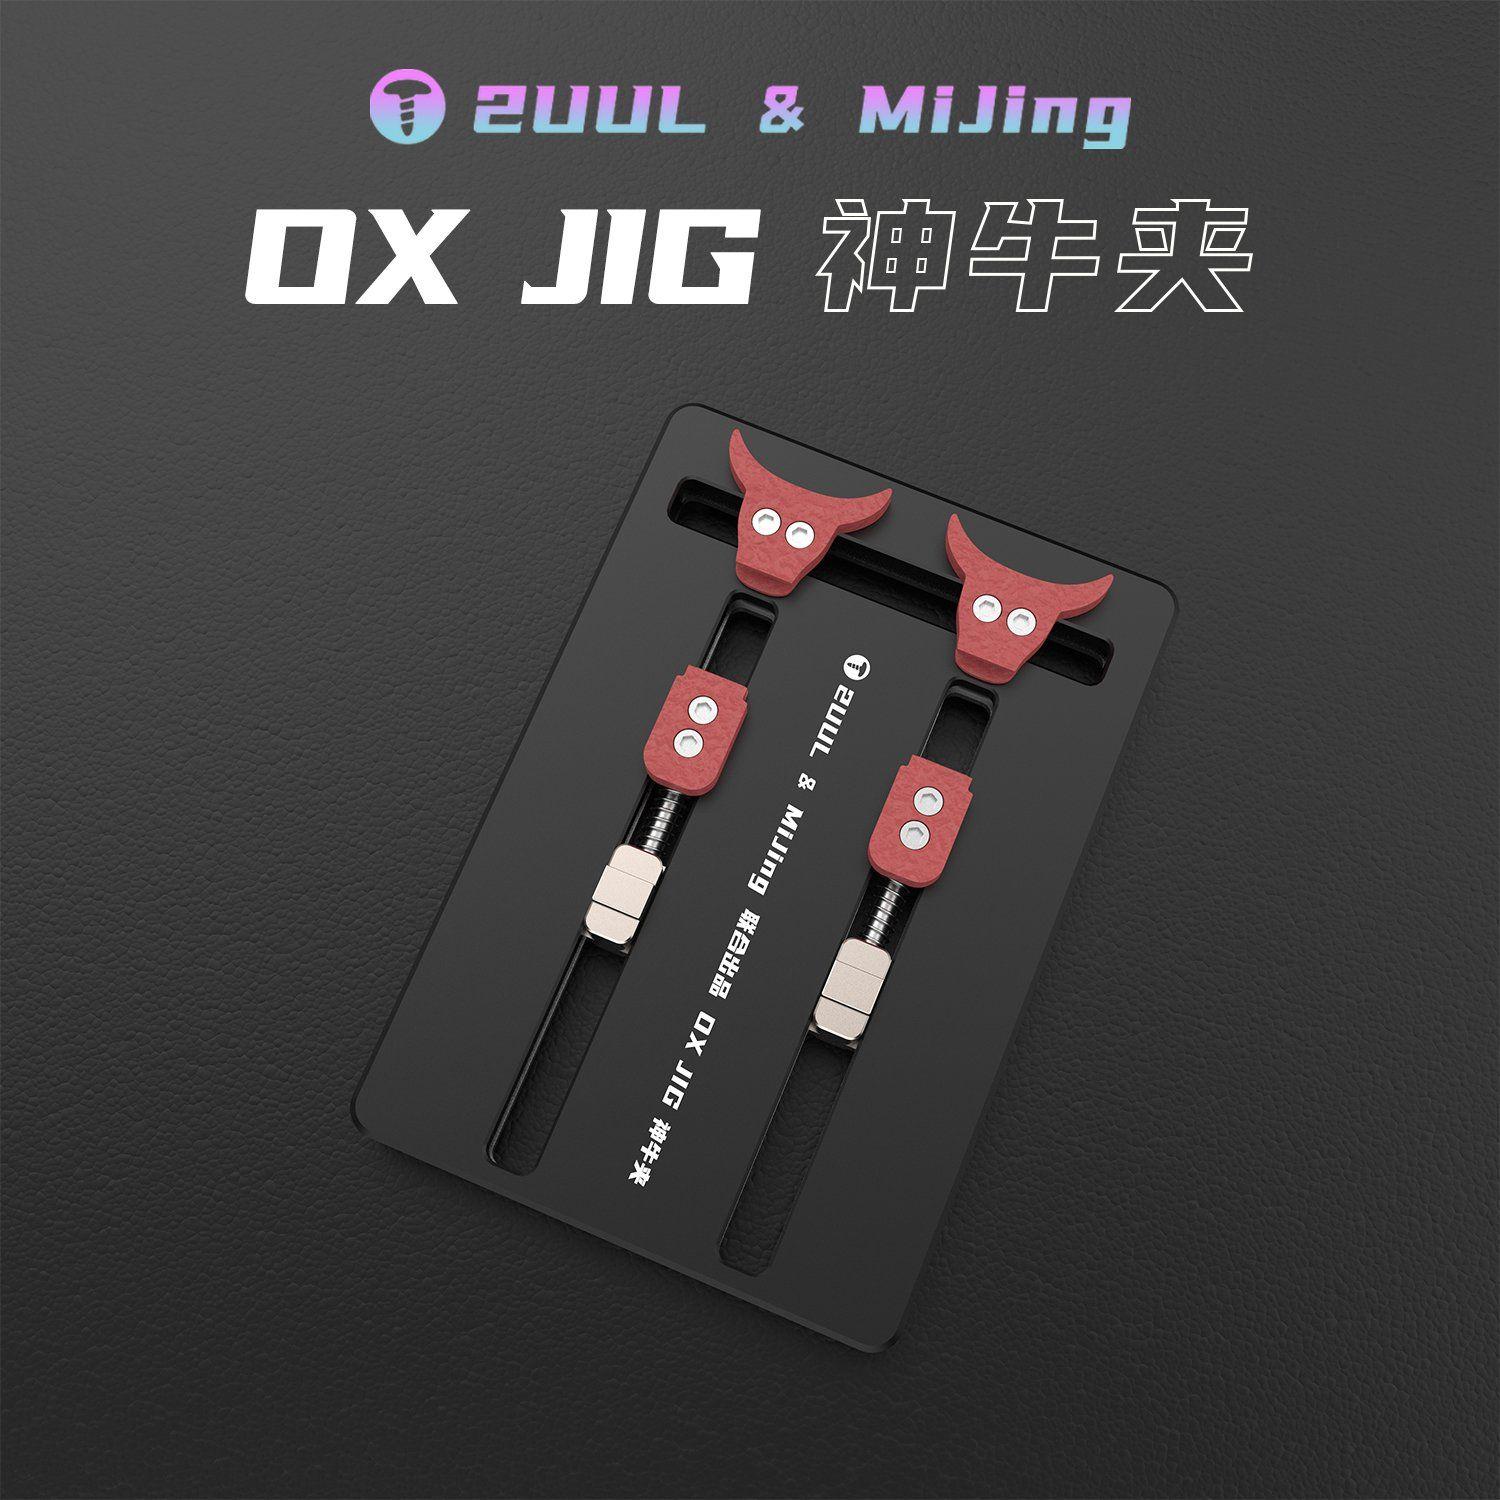 Multifunkční držák desky plošných spojů 2uuL & MiJing OX JIG